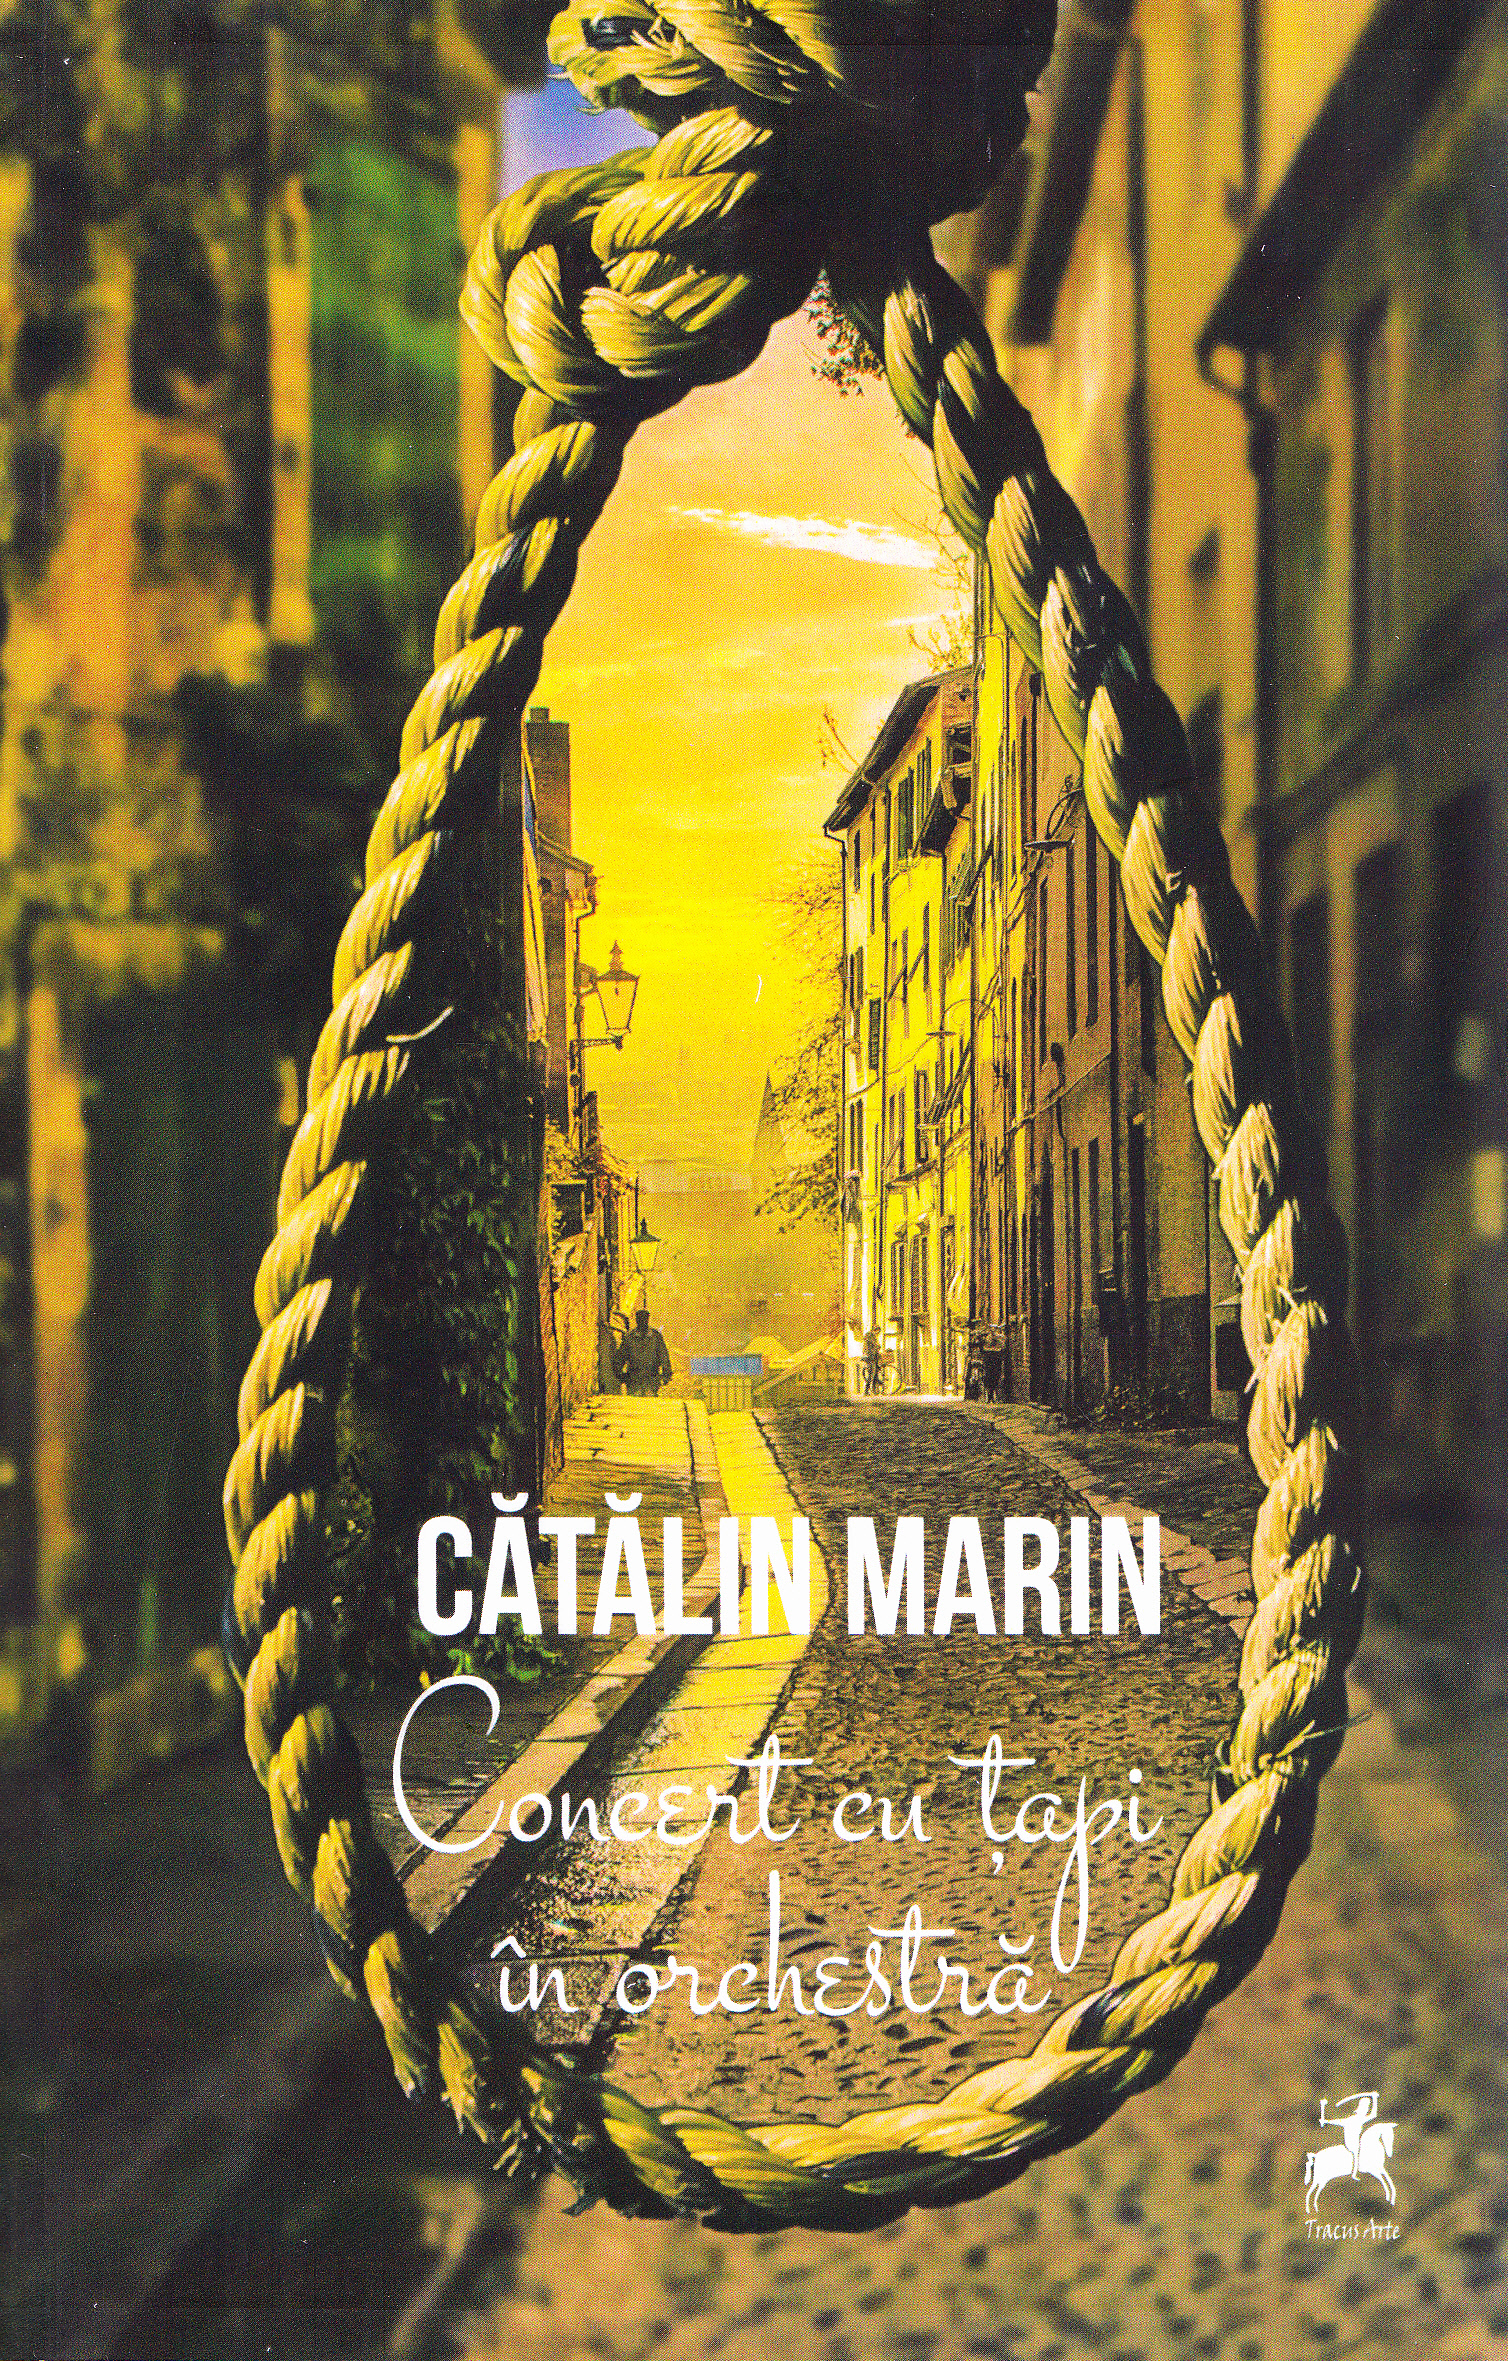 Concert cu tapi in orchestra - Catalin Marin